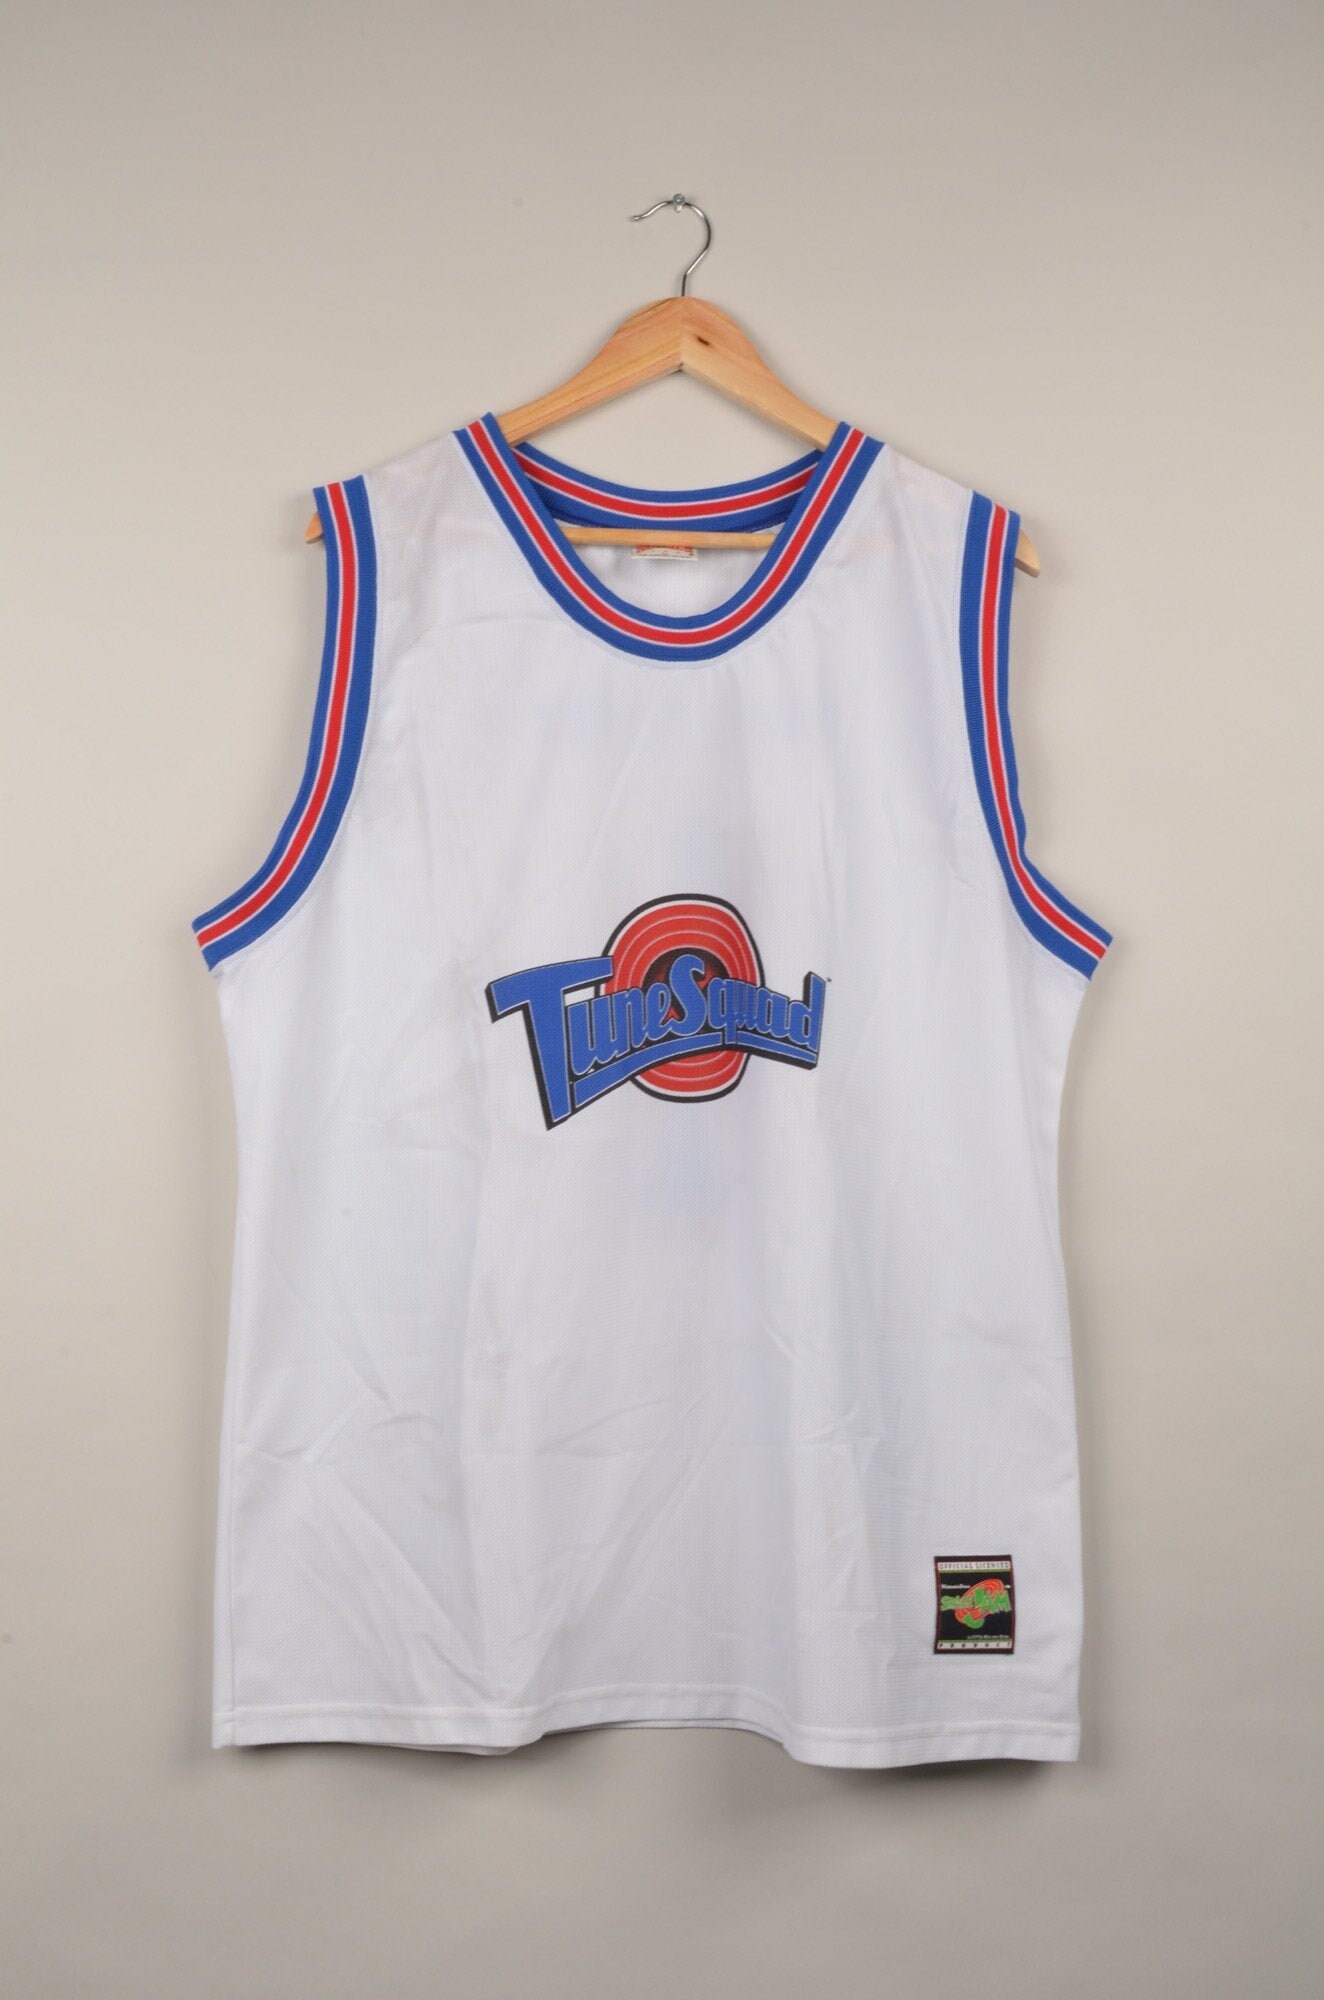 Jugend Basketball Jersey Bugs #1 Film Space Jam Trikots Häschen Shirts für Kinder 